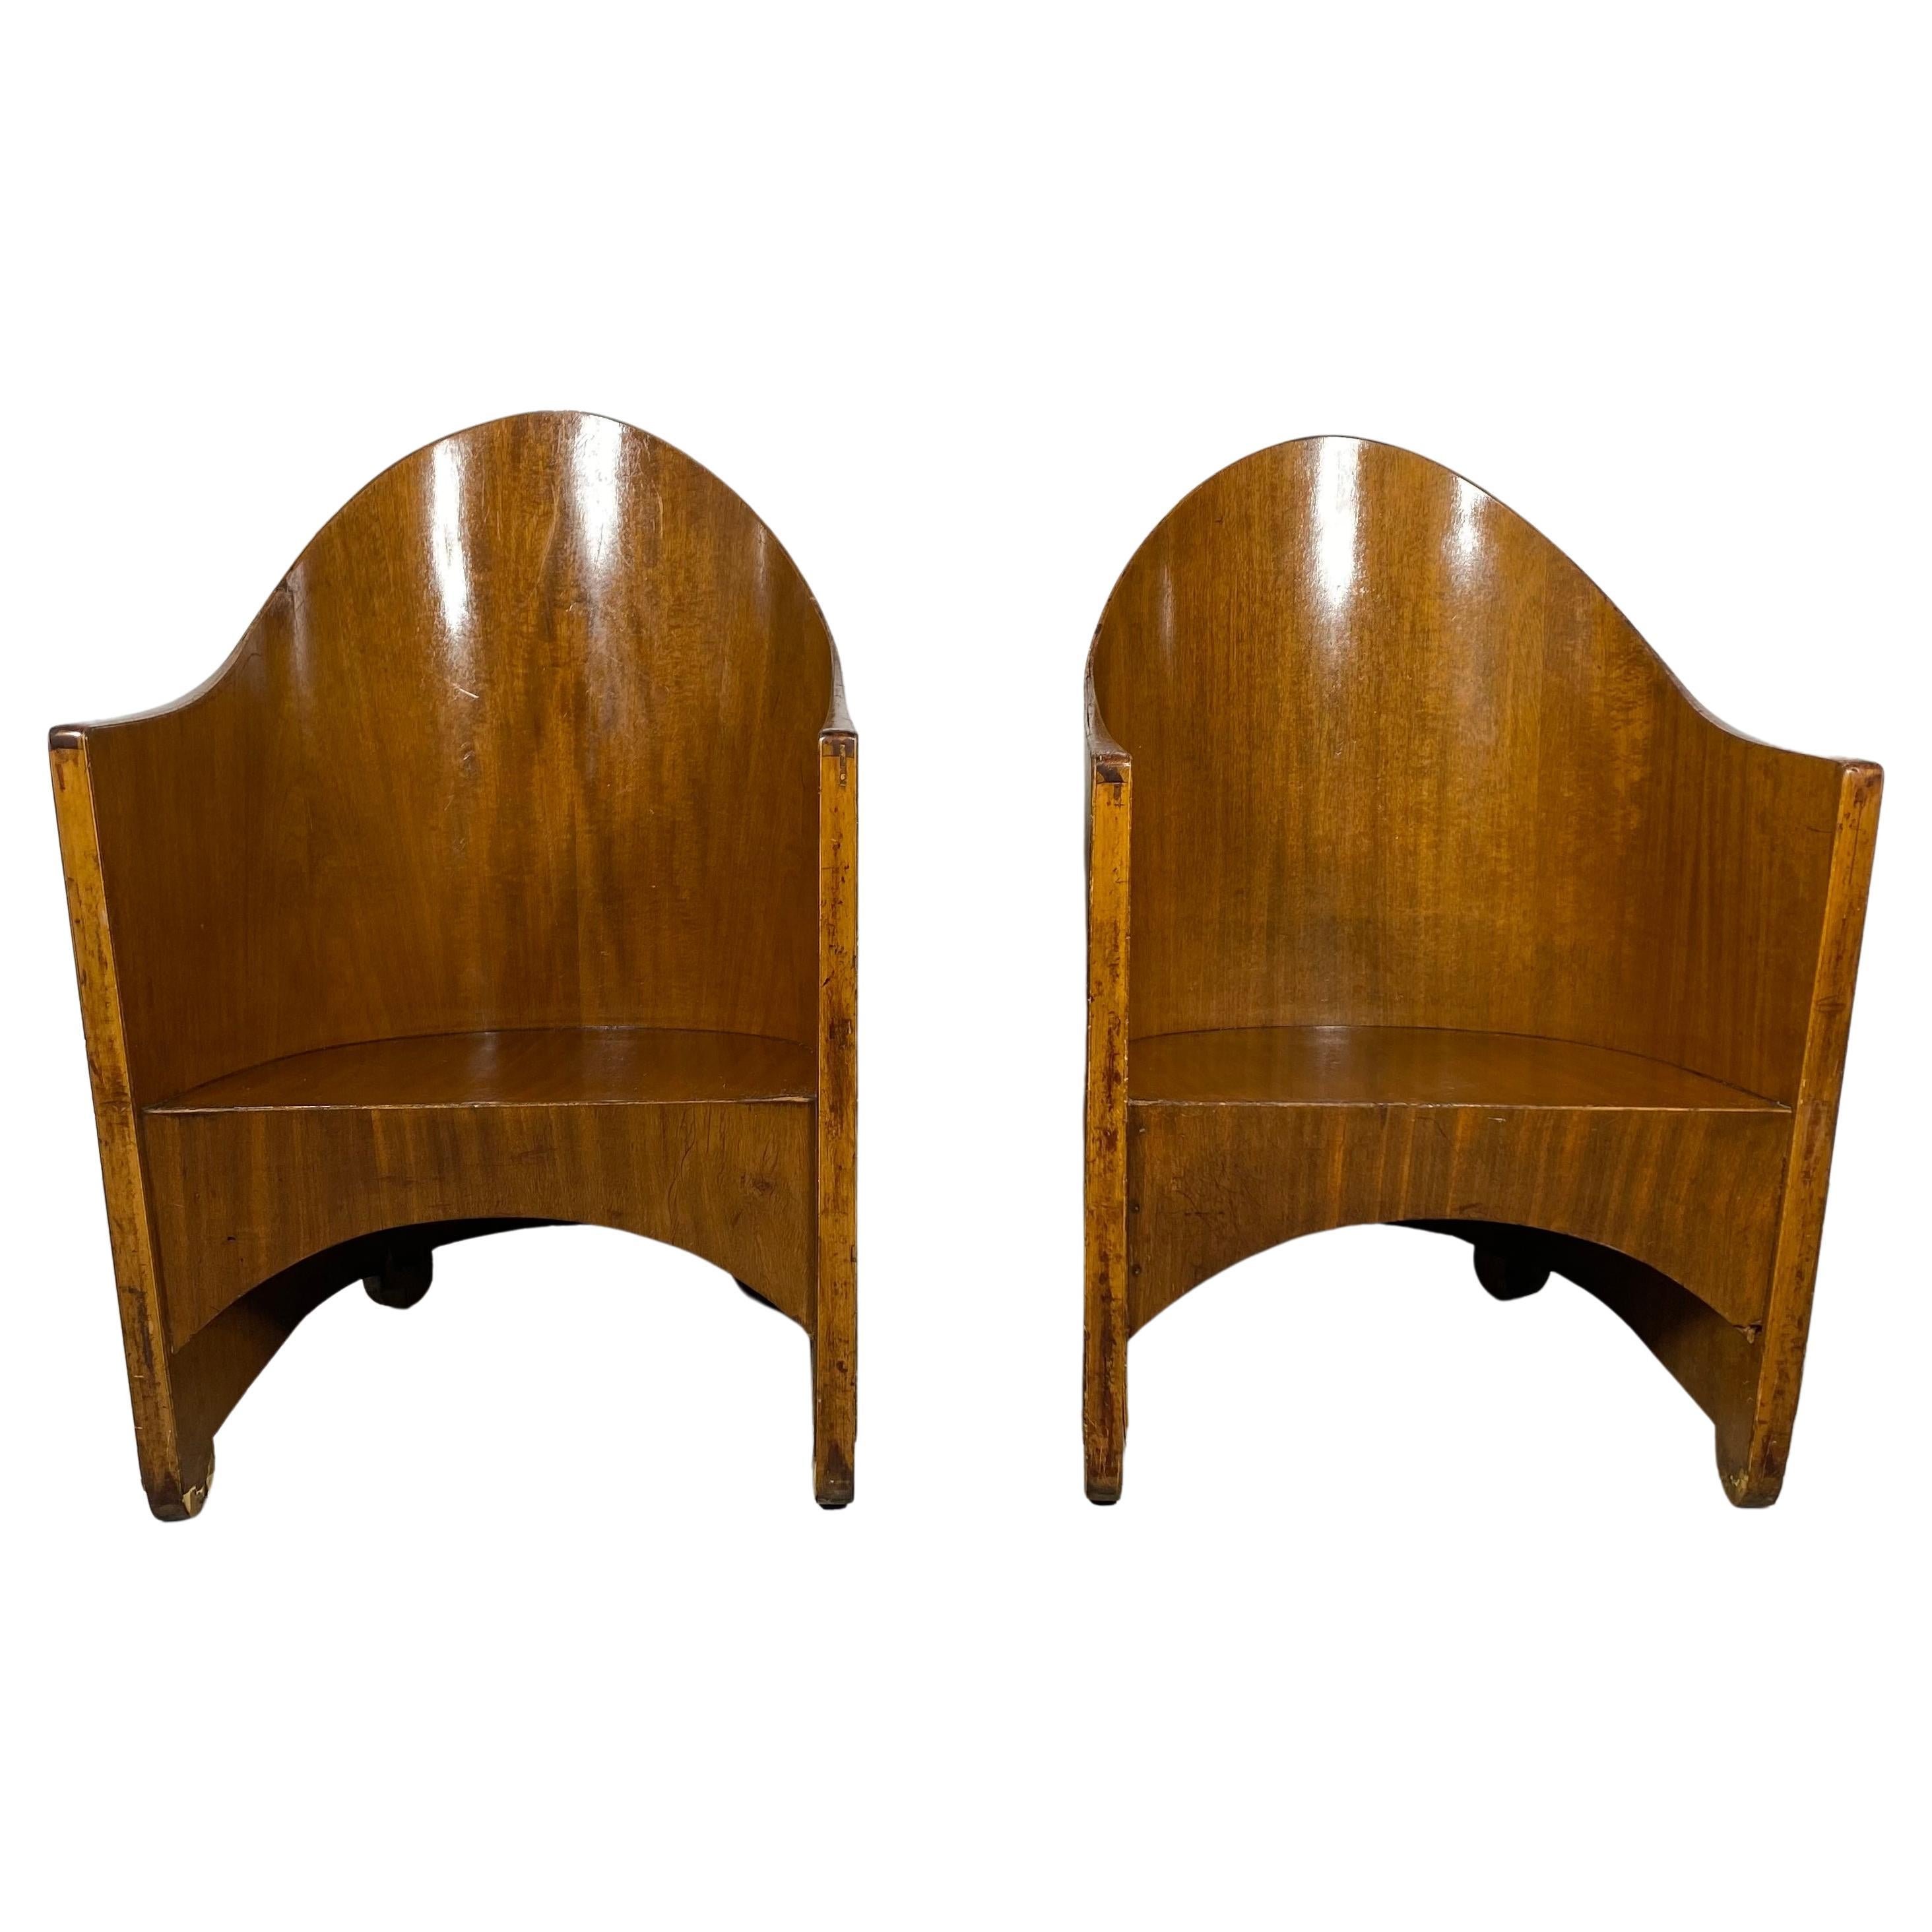 Rare Pair Modernist Arm Chairs by Walter von Nessen, Art Deco, circa 1929